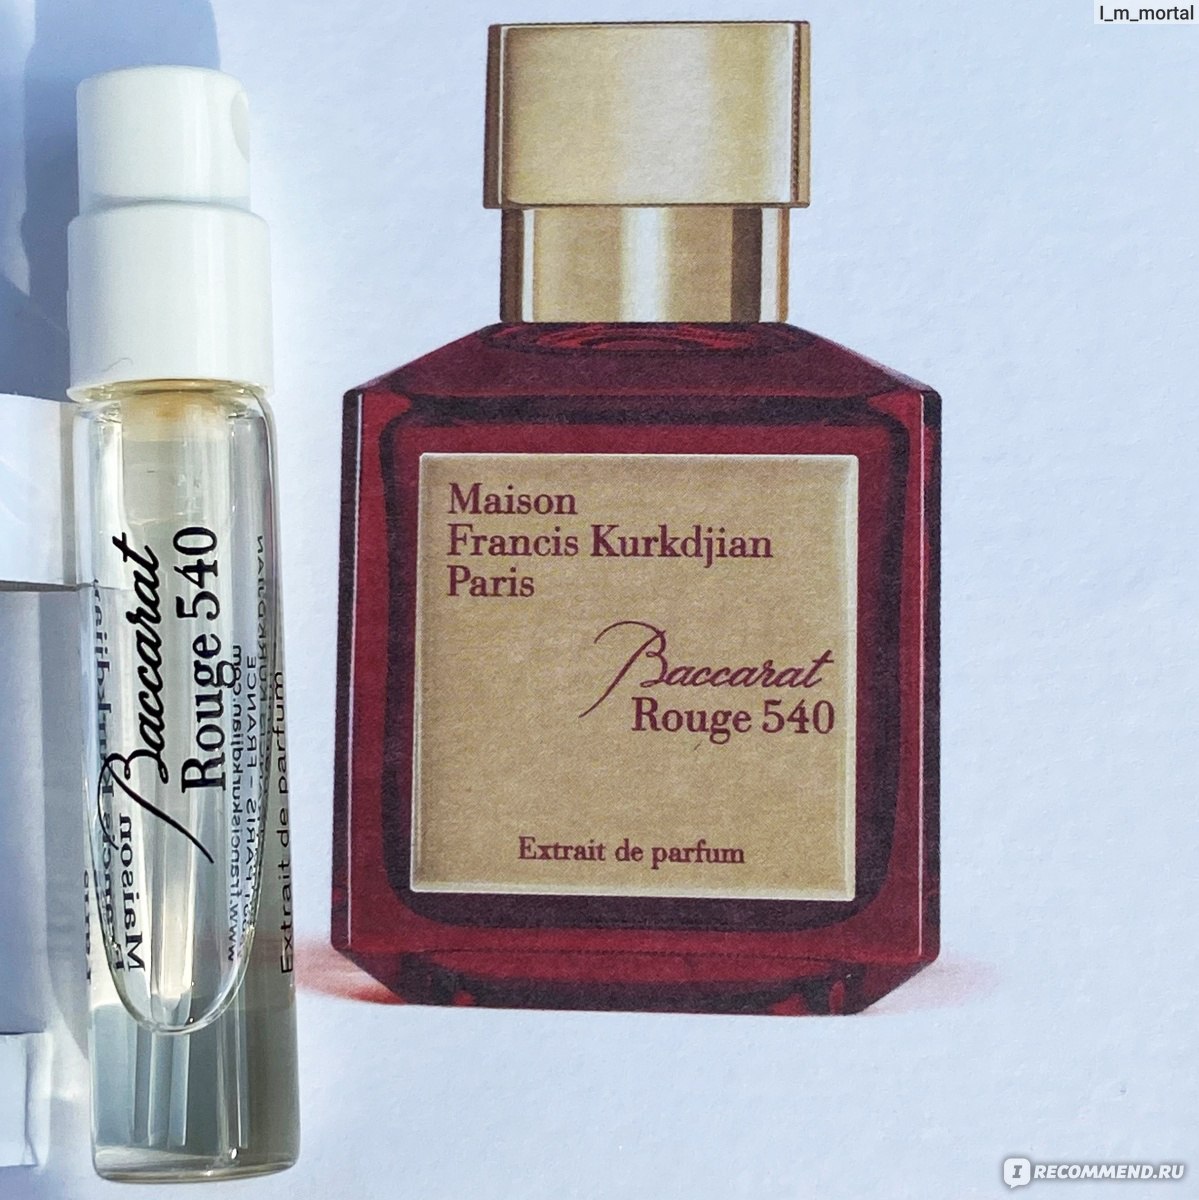 Kurkdjian baccarat rouge 540 extrait